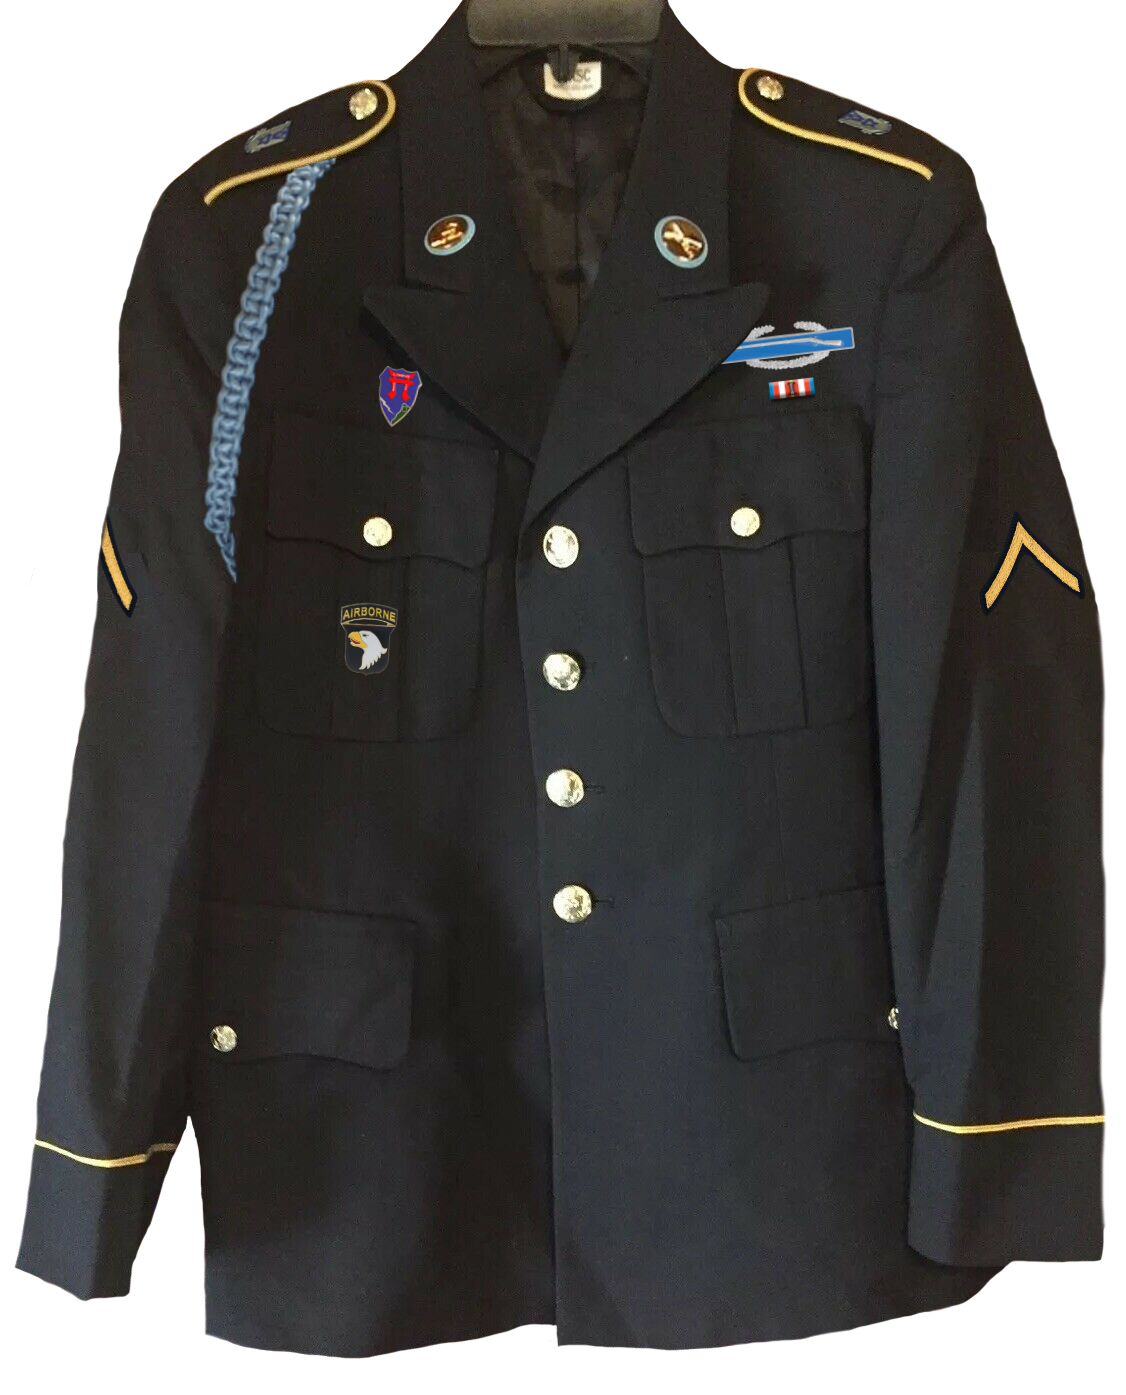 Die Uniform von Wiesel